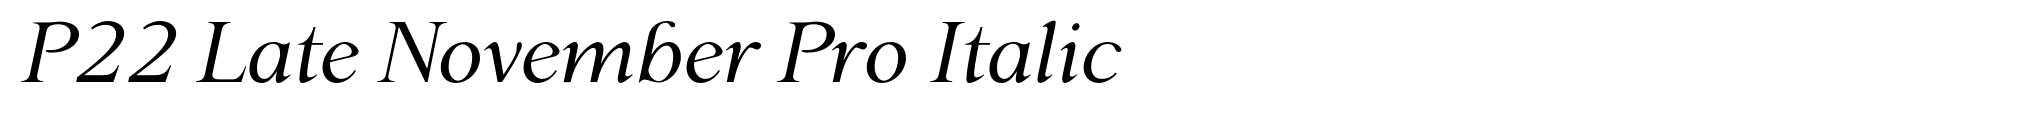 P22 Late November Pro Italic image